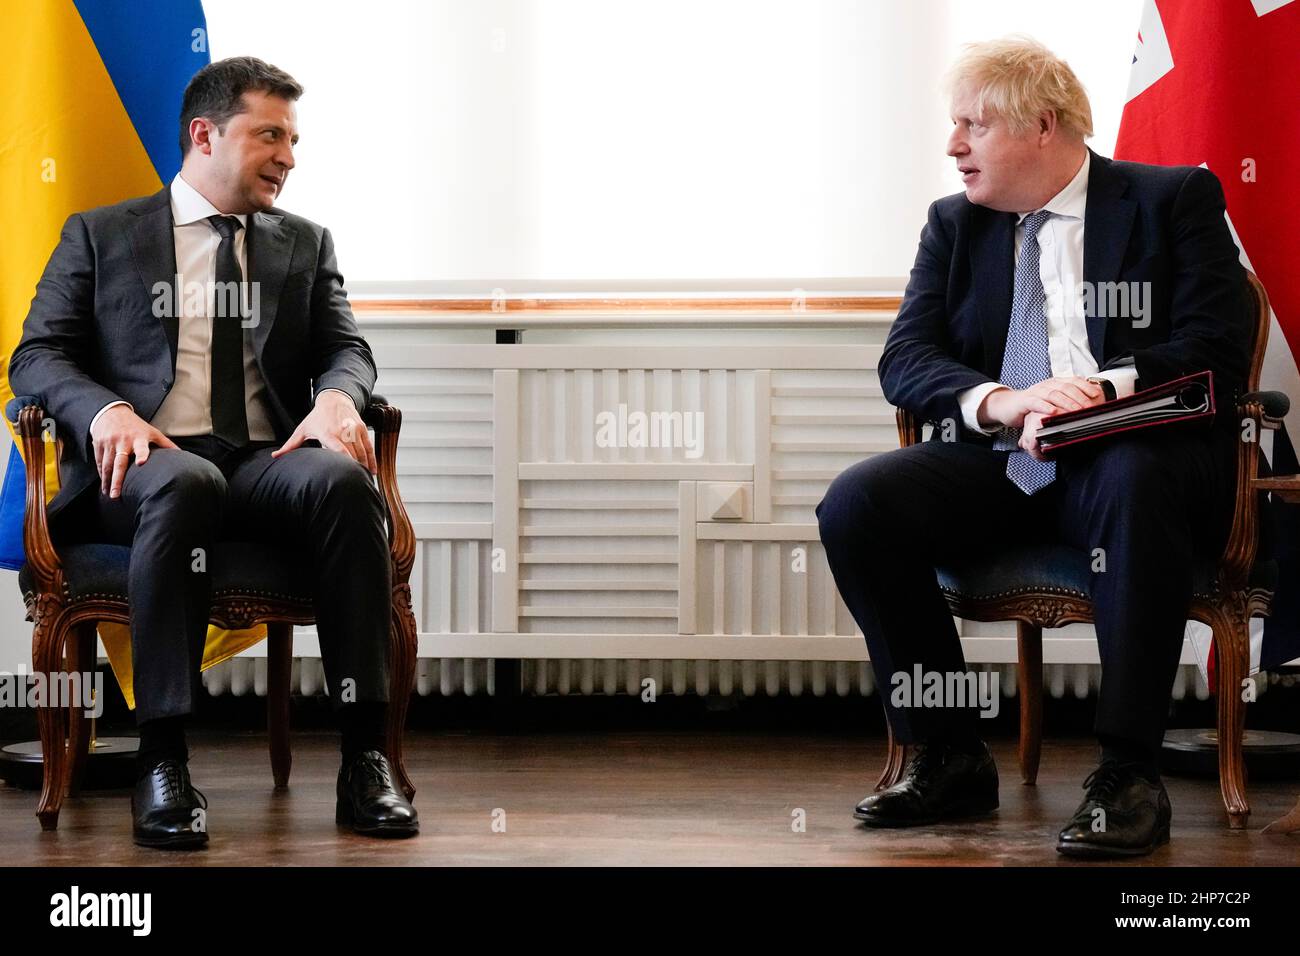 Le président ukrainien Volodymyr Zelenskyy assiste à une réunion avec le Premier ministre Boris Johnson lors de la Conférence de Munich sur la sécurité en Allemagne, où le Premier ministre rencontre les dirigeants mondiaux pour discuter des tensions en Europe de l’est. Date de la photo: Samedi 19 février 2022. Banque D'Images